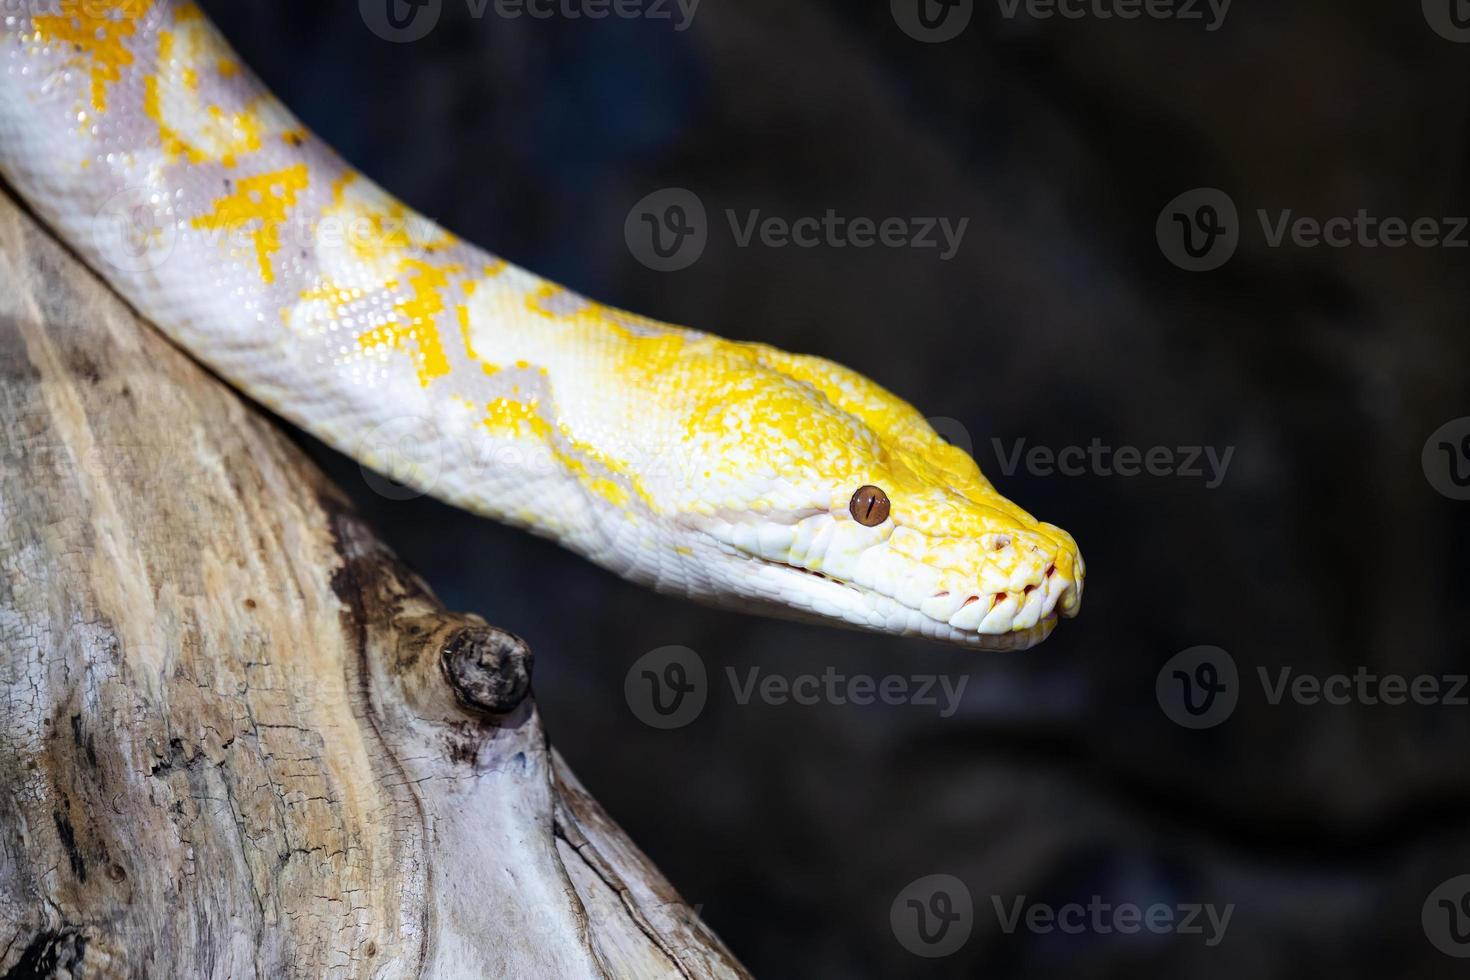 serpiente pitón birmana. reptiles y reptiles. anfibios y anfibios. fauna tropical. fauna y zoología. foto